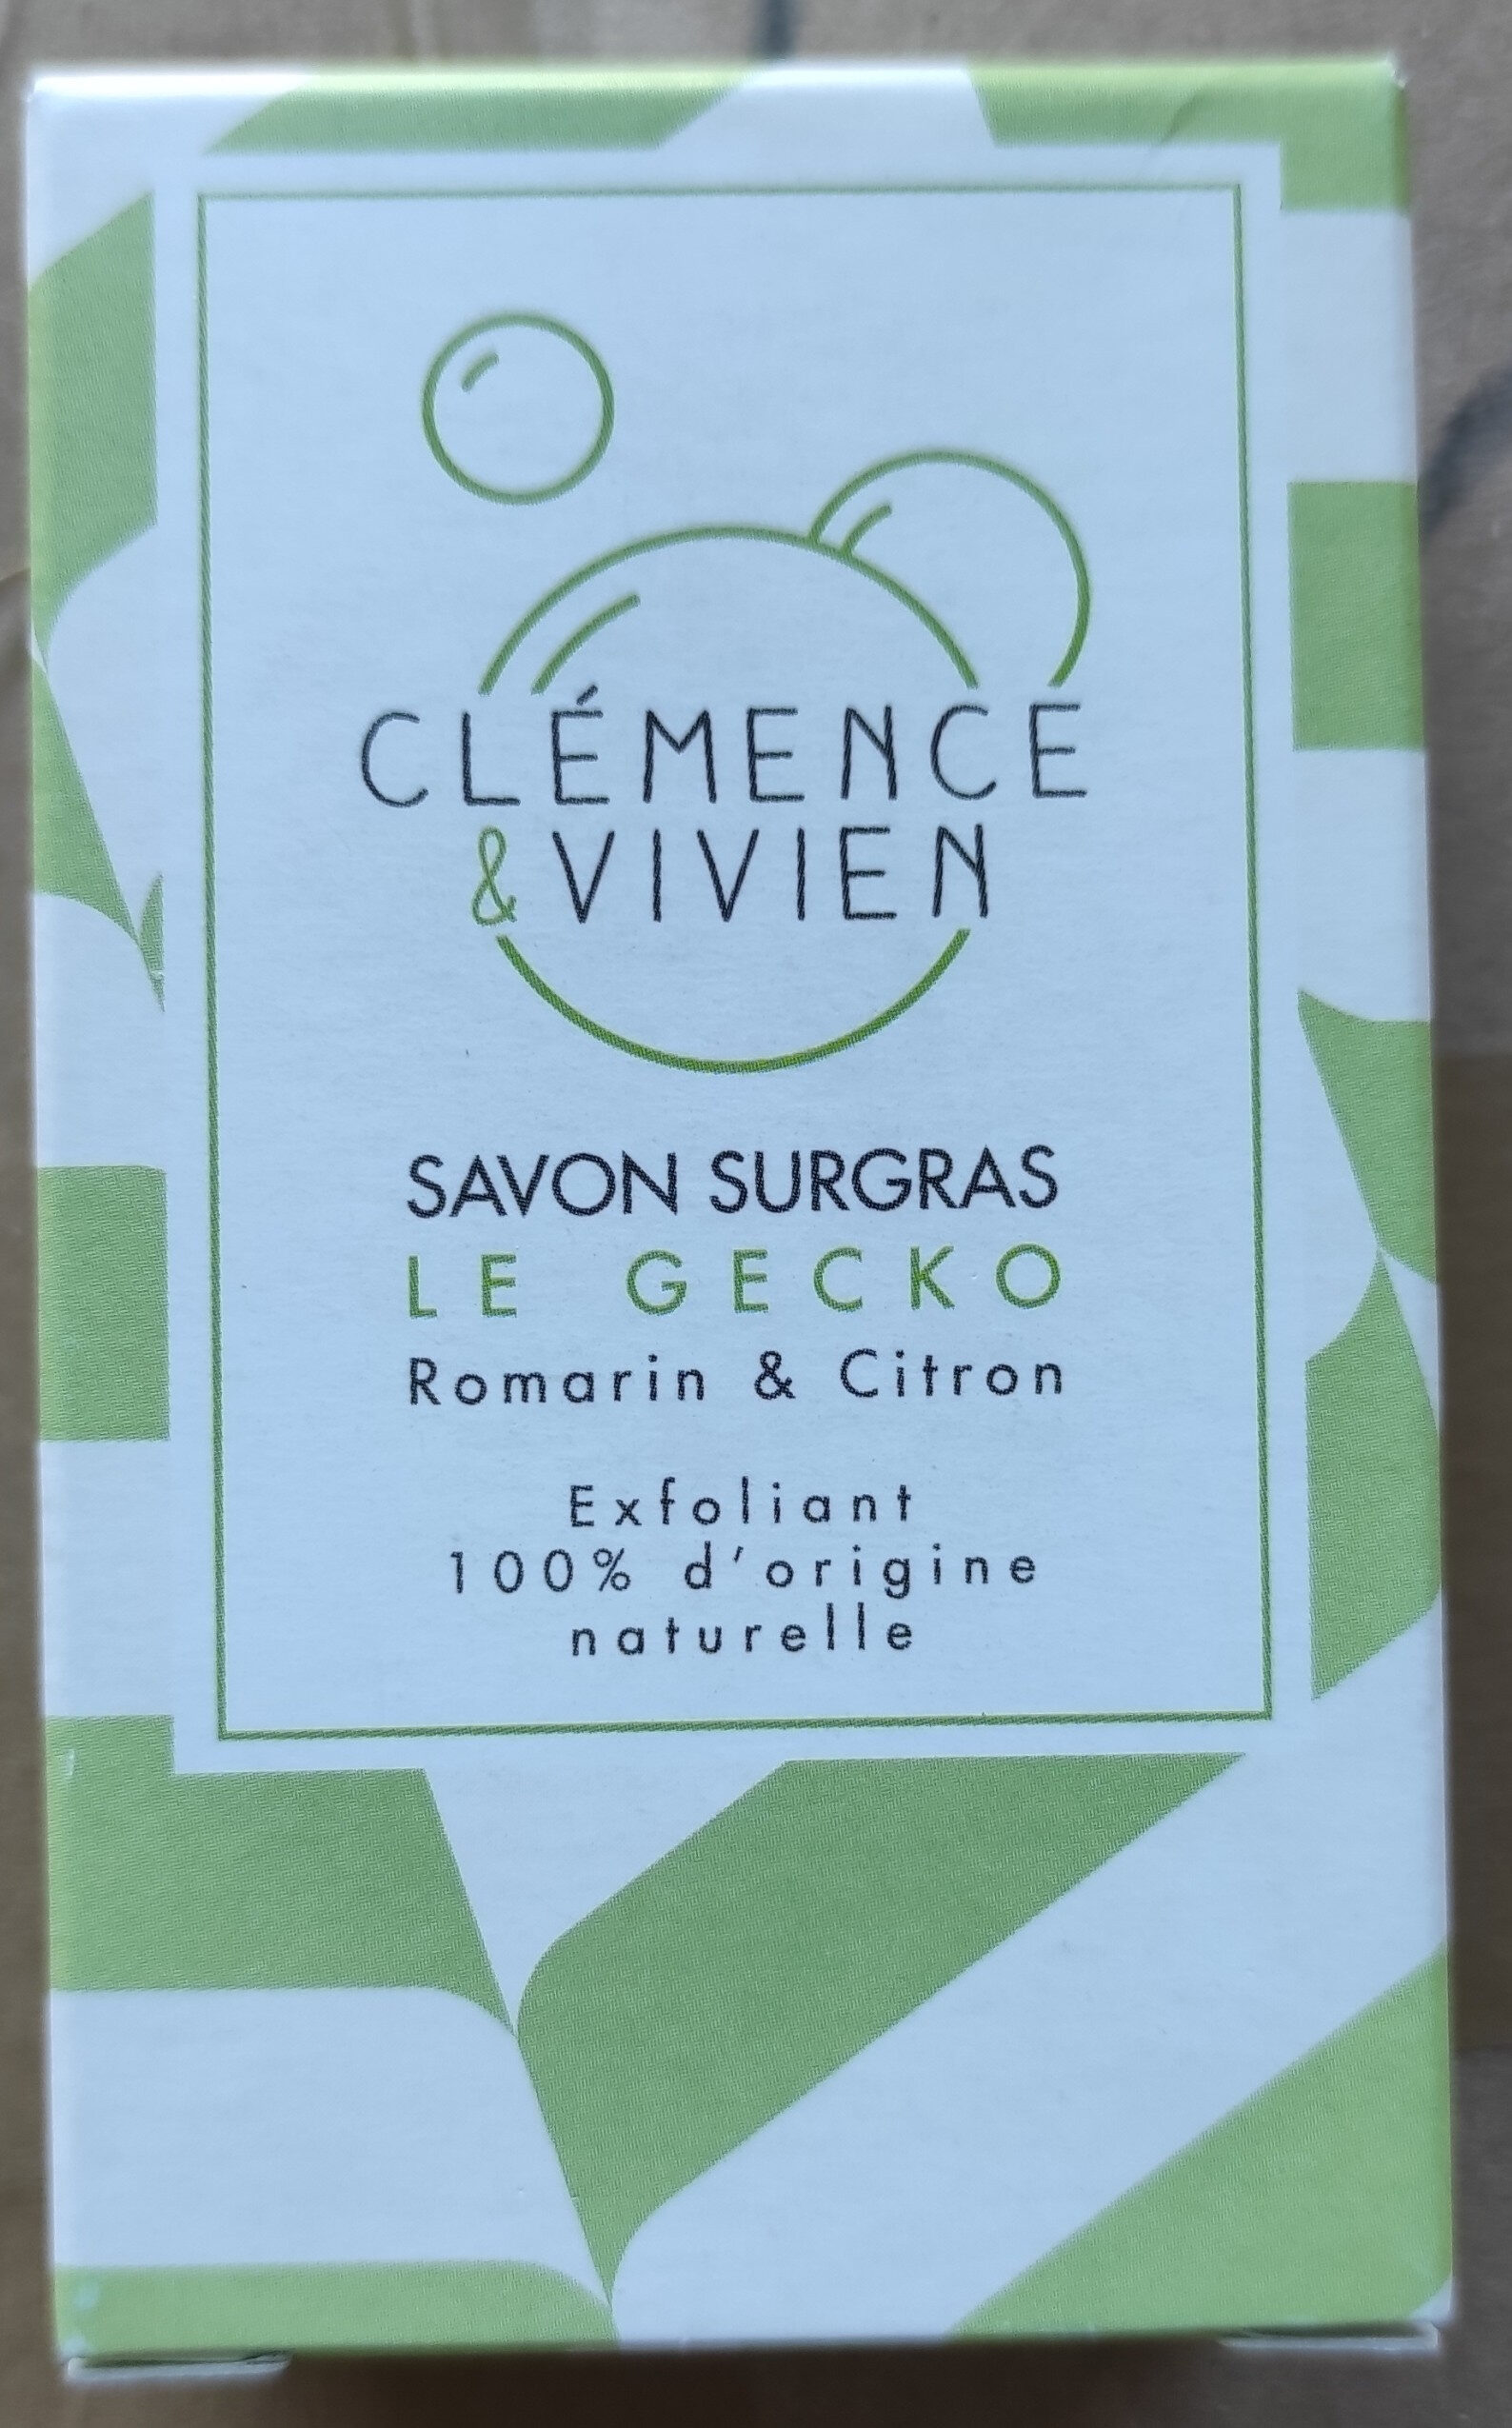 Savon surgras Le Gecko Romarin & Citron - Produkt - fr